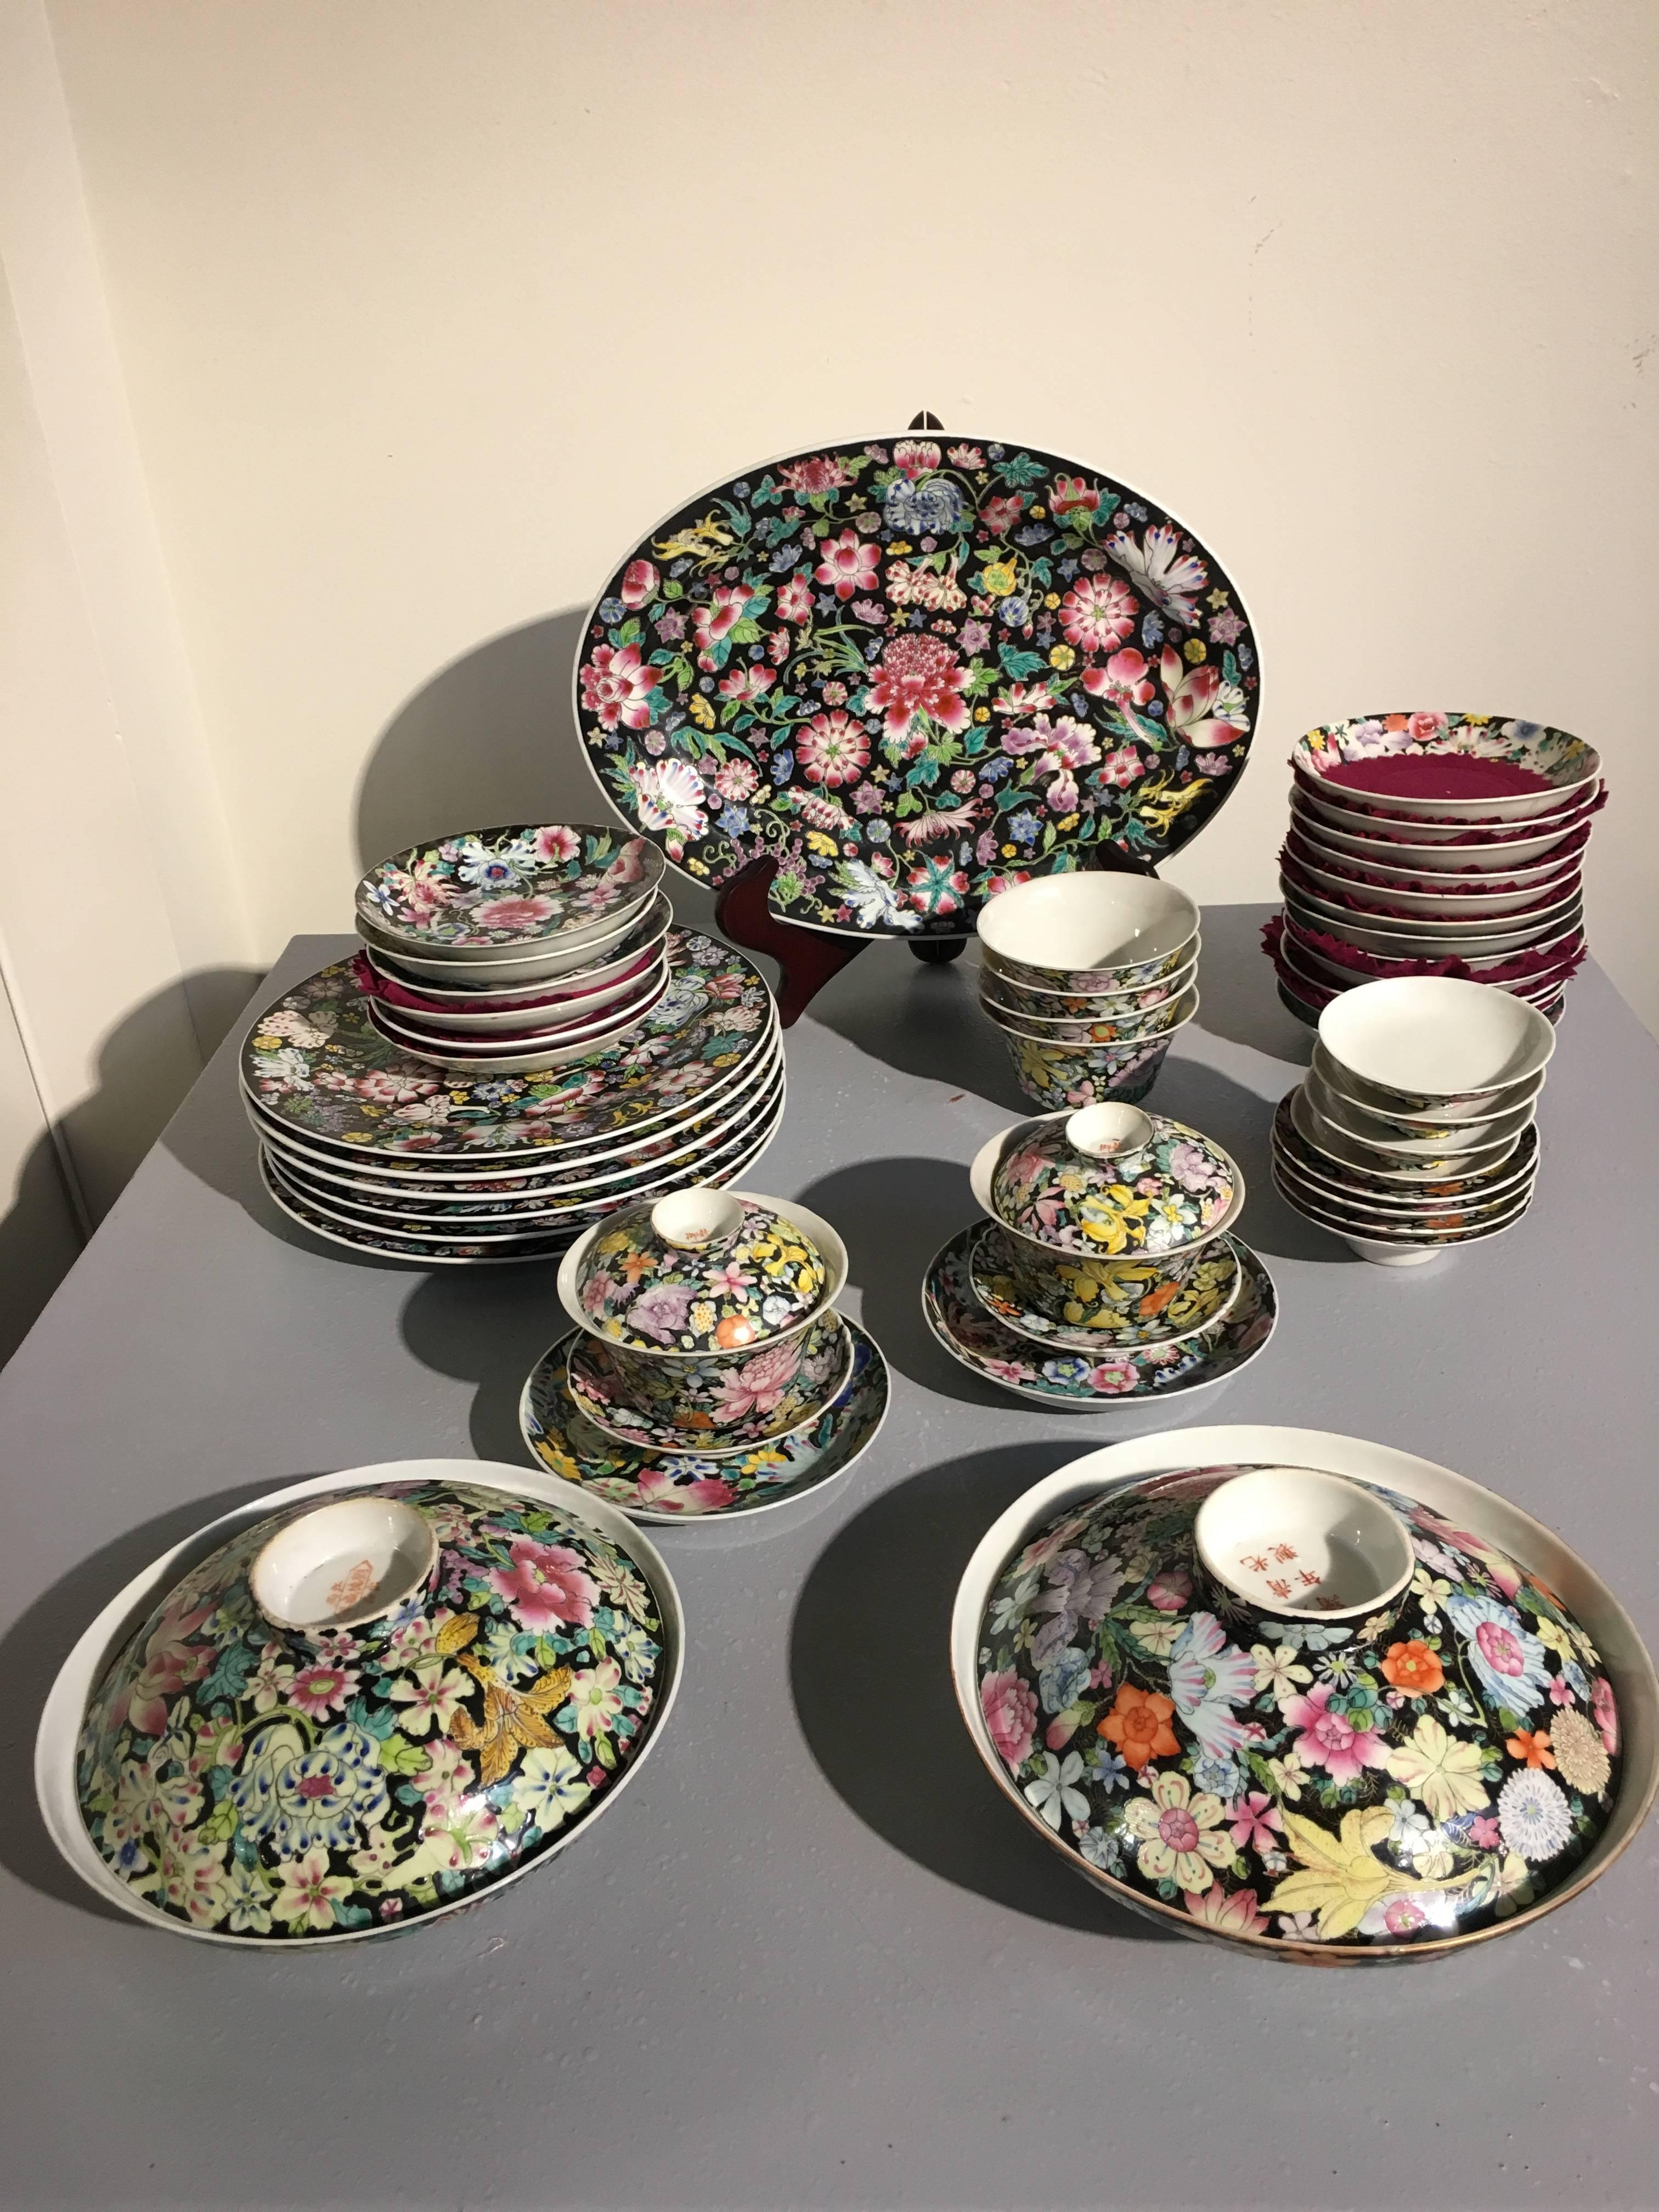 Un grand ensemble assemblé de porcelaine chinoise mille fleurs. L'ensemble comprend un service à thé complet, ainsi que diverses assiettes, tasses et soucoupes. Toutes les pièces sont réalisées selon le motif 